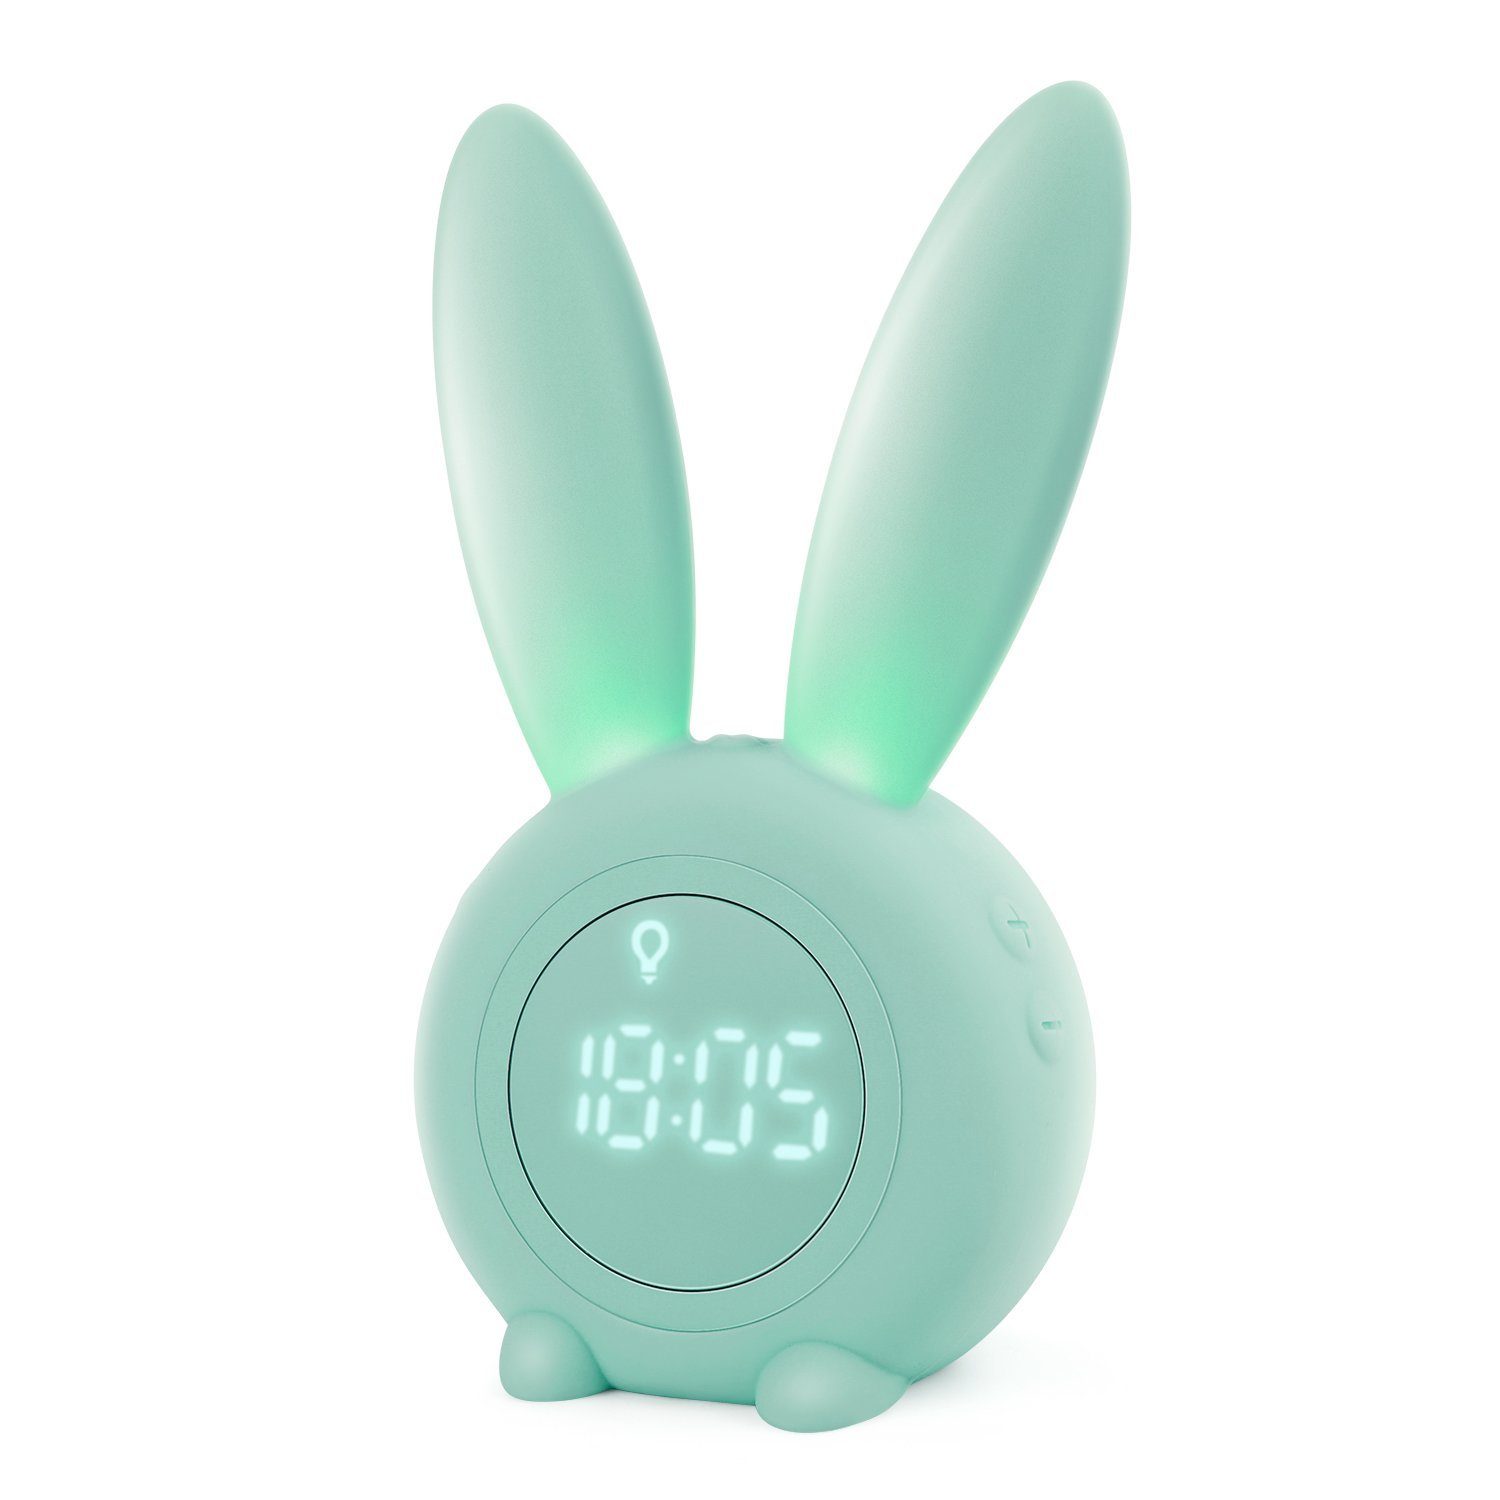 EXTSUD Wecker Kinder Lichtwecker Snooze-Funktion Creative Nachttischlampe Cute Rabbit Nachtlicht Grün zeitgesteuertes Kinderwecker